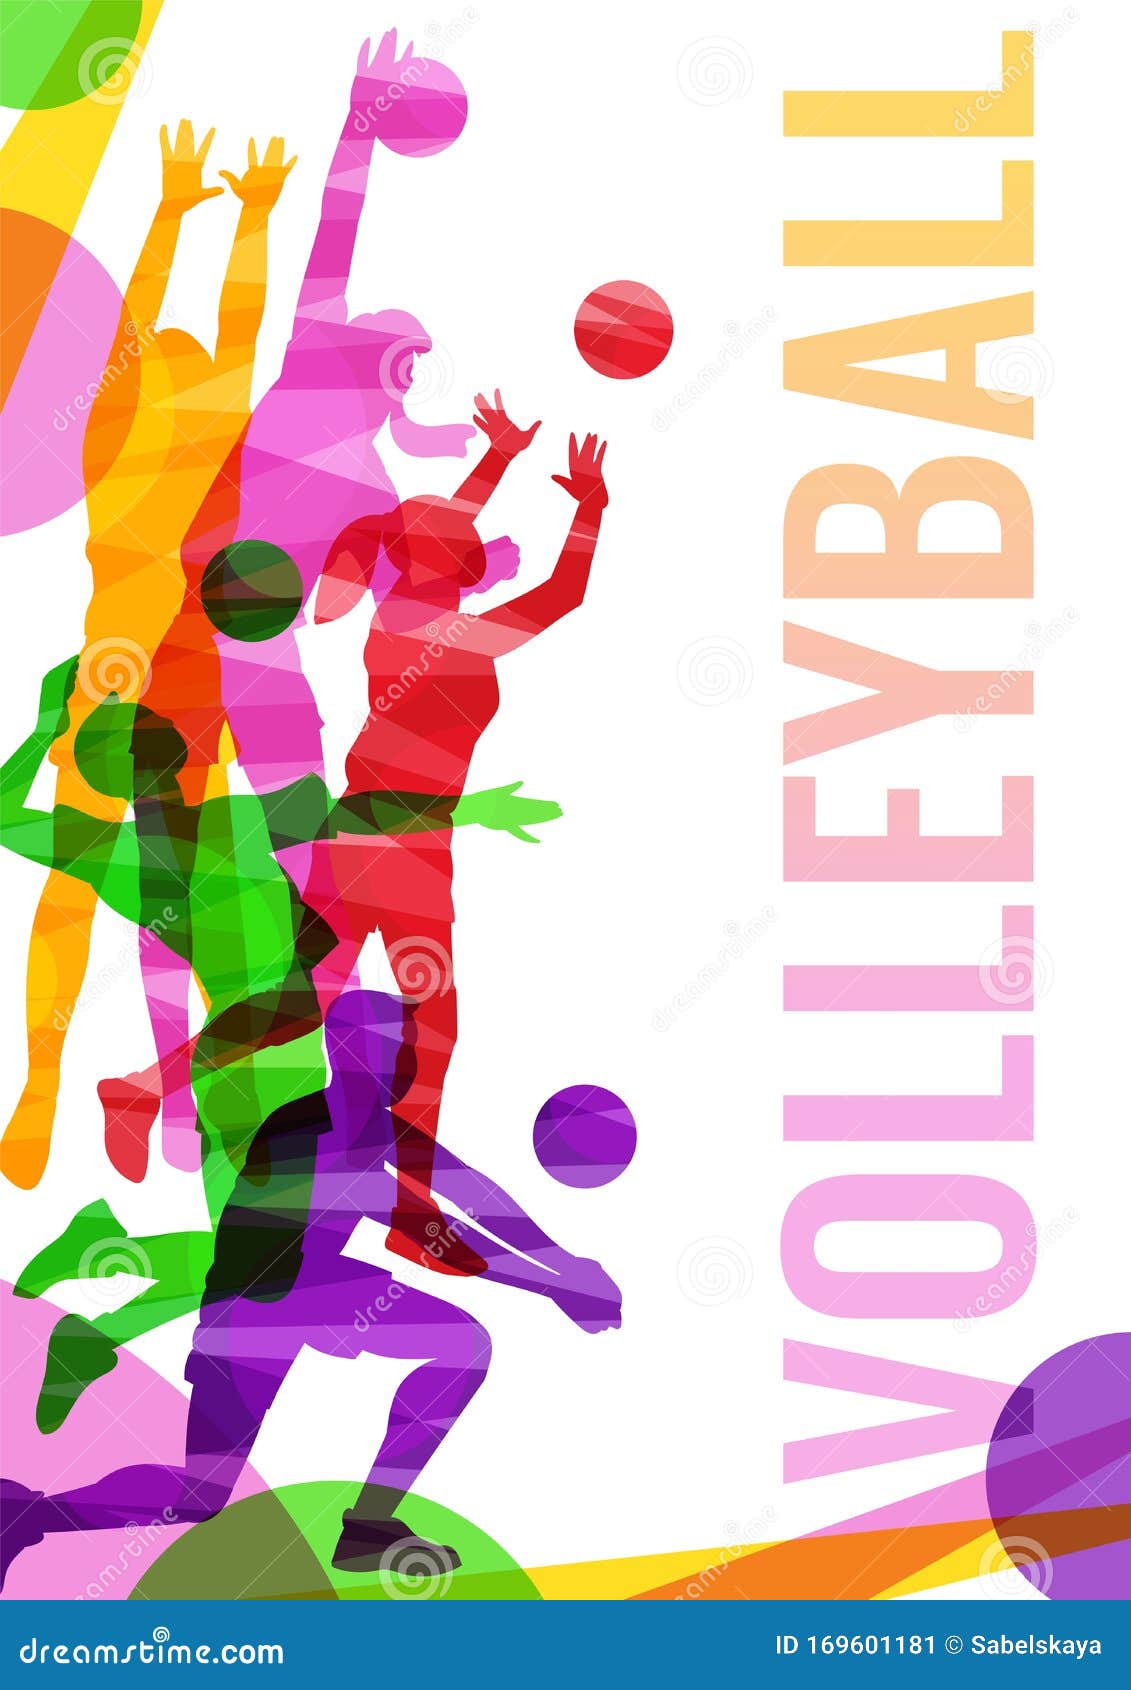 Vecteurs et illustrations de Cadeau volley ball en téléchargement gratuit